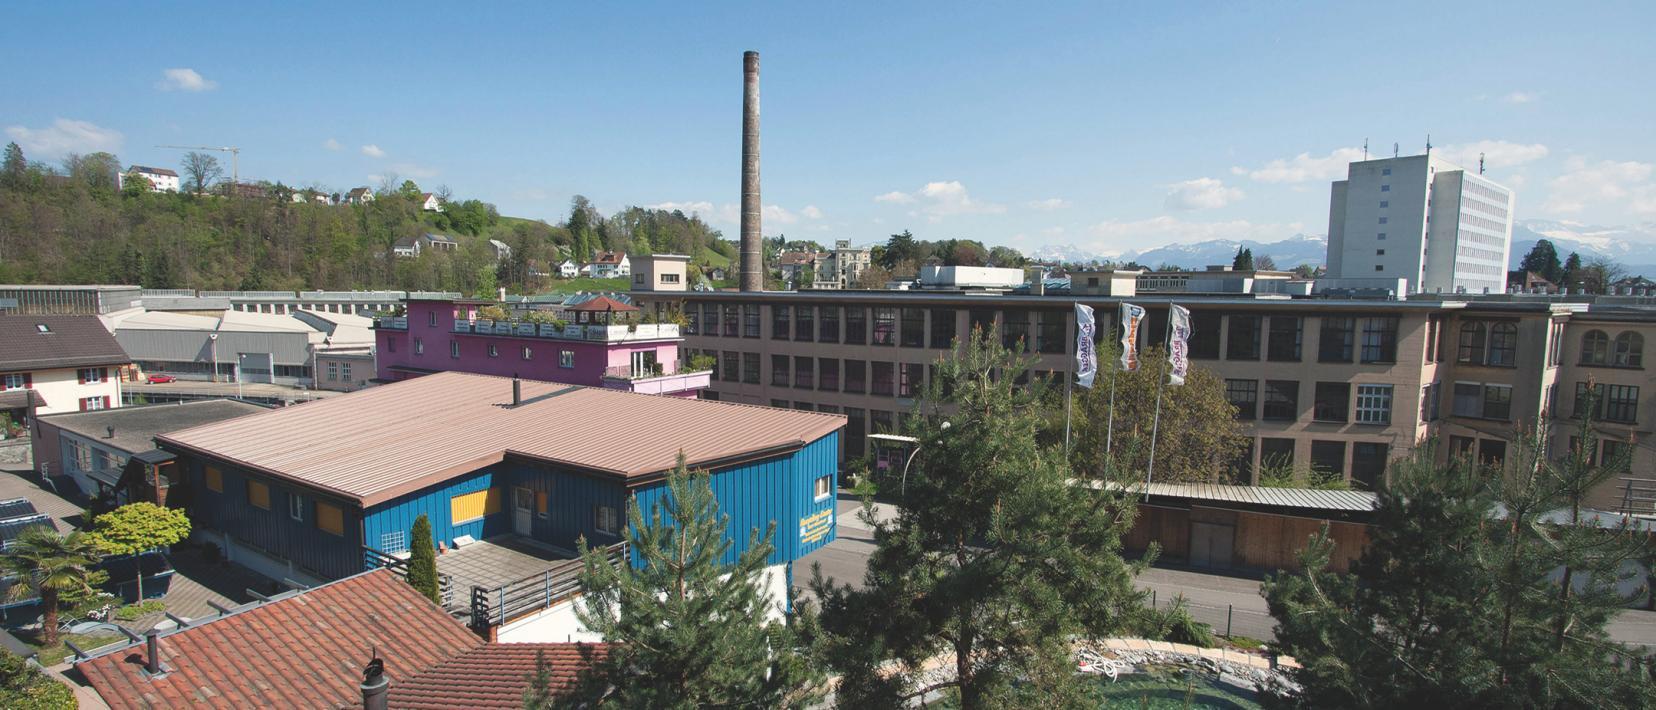 Blick auf das Joweid Technologie Zentrum Rüti. Im Vordergrund Bäume und ein blaues Nebengebäude, in der Bildmitte ein Hauptgebäude des ehemaligen Industrieareals.